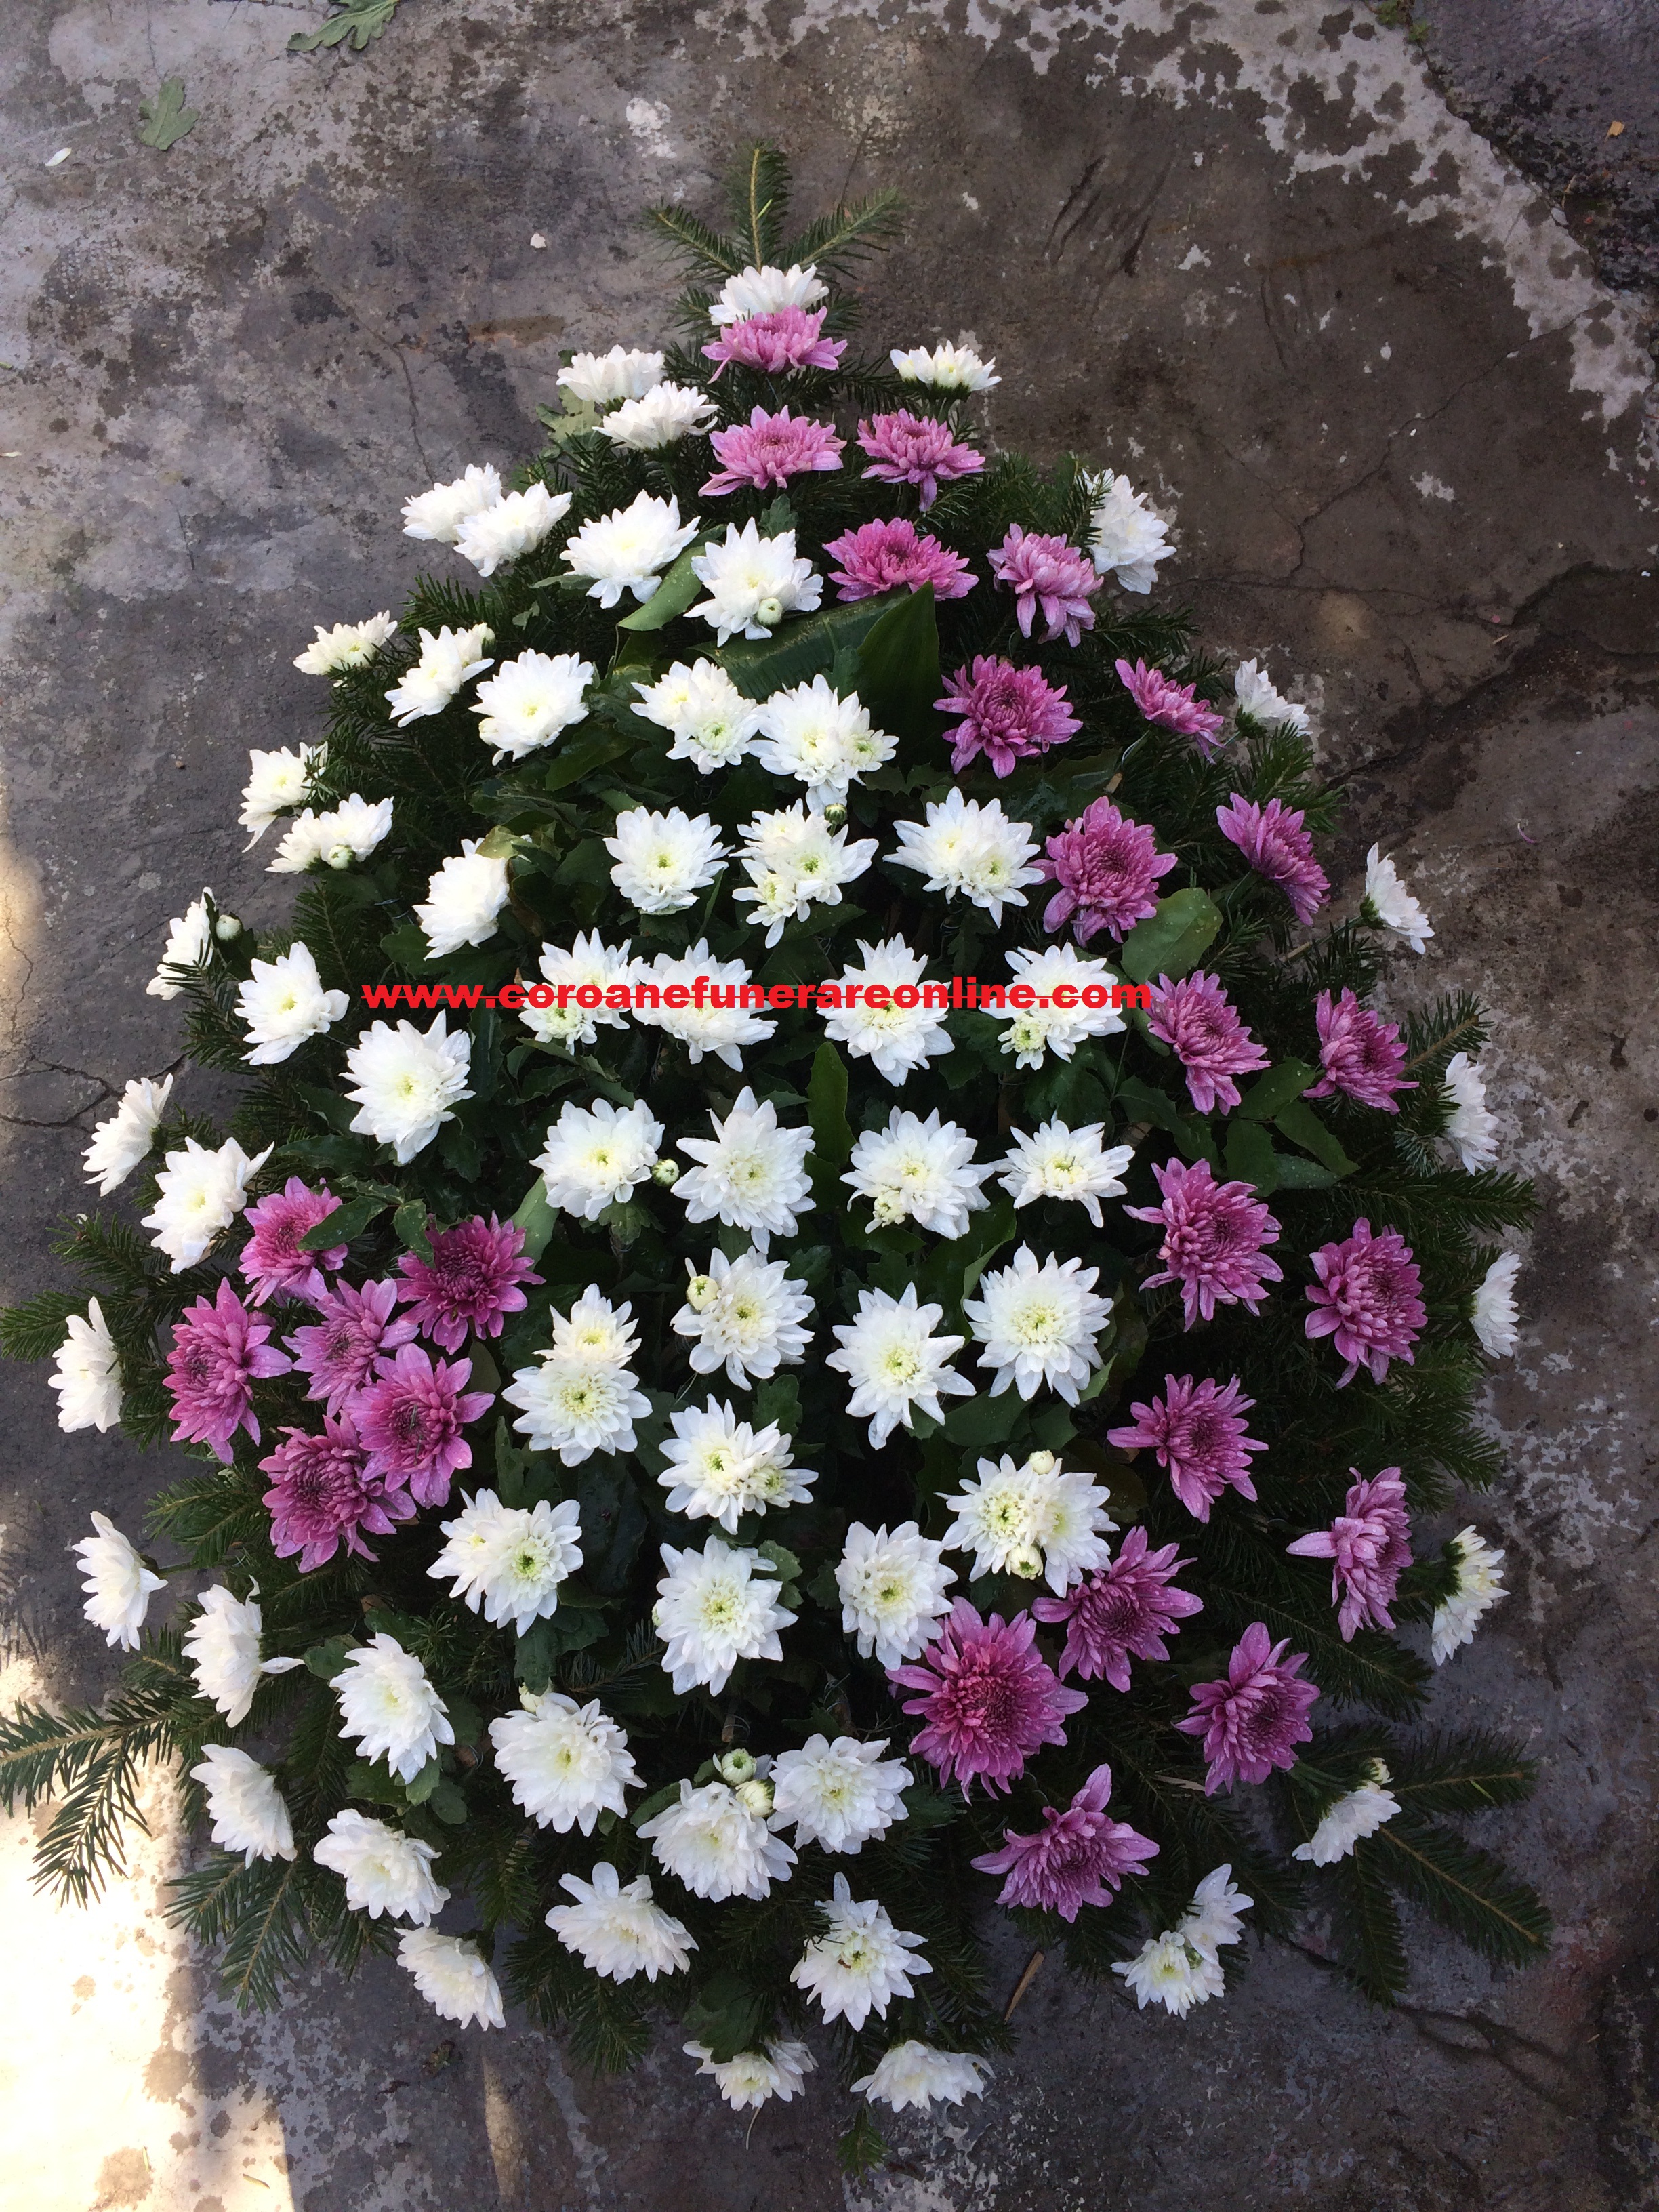 coroana funerara bucuresti din crizantema alba cu diagonala mov pentru inmormantare 